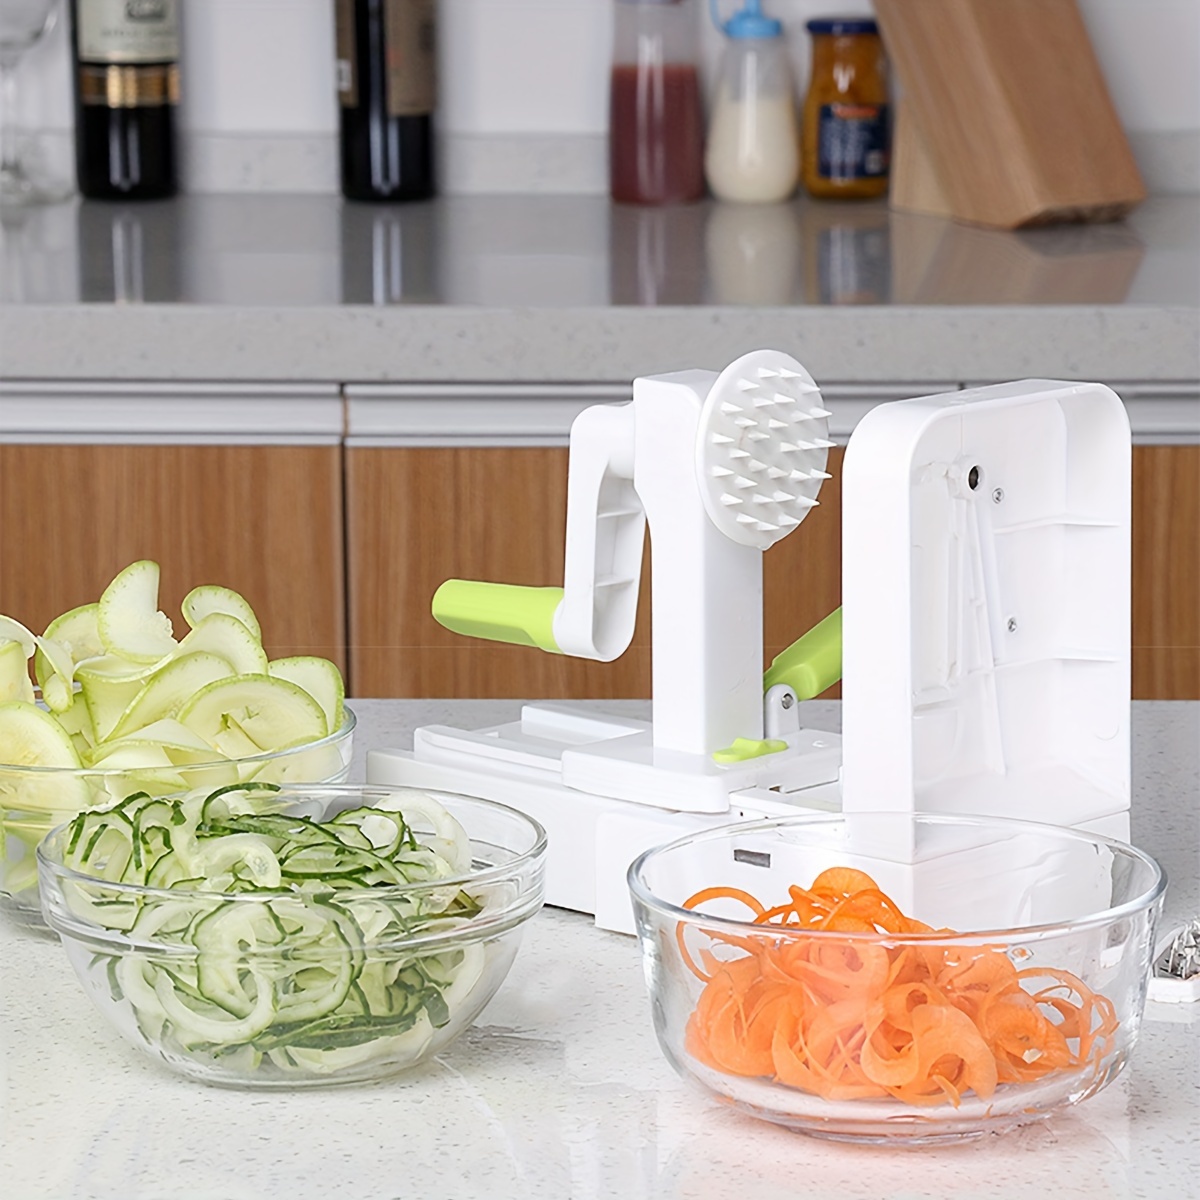 3 in 1 Spiral Slicer Zucchini Noodle Maker Vegetable Spiralizer Spiral  Rotating Slice Cutter Manual Grater Kitchen Tools for Health & Diet Food  Salad